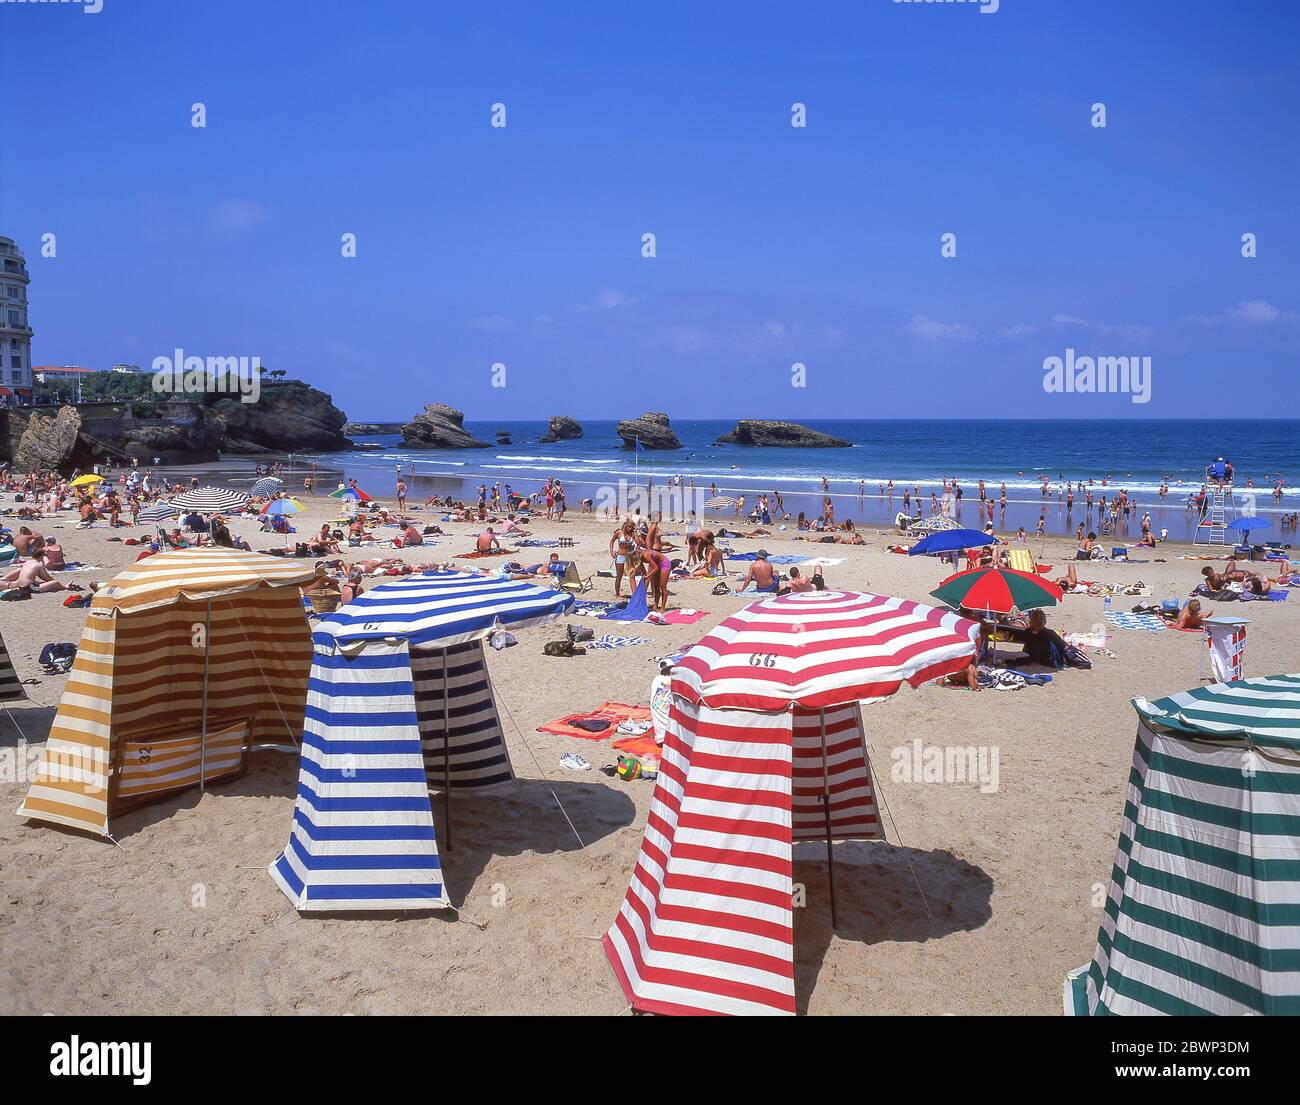 Vintage beach changing tents on Plage Miramar, Biarritz (Miarritze), Pyrénées-Atlantiques, Nouvelle-Aquitaine, France Stock Photo